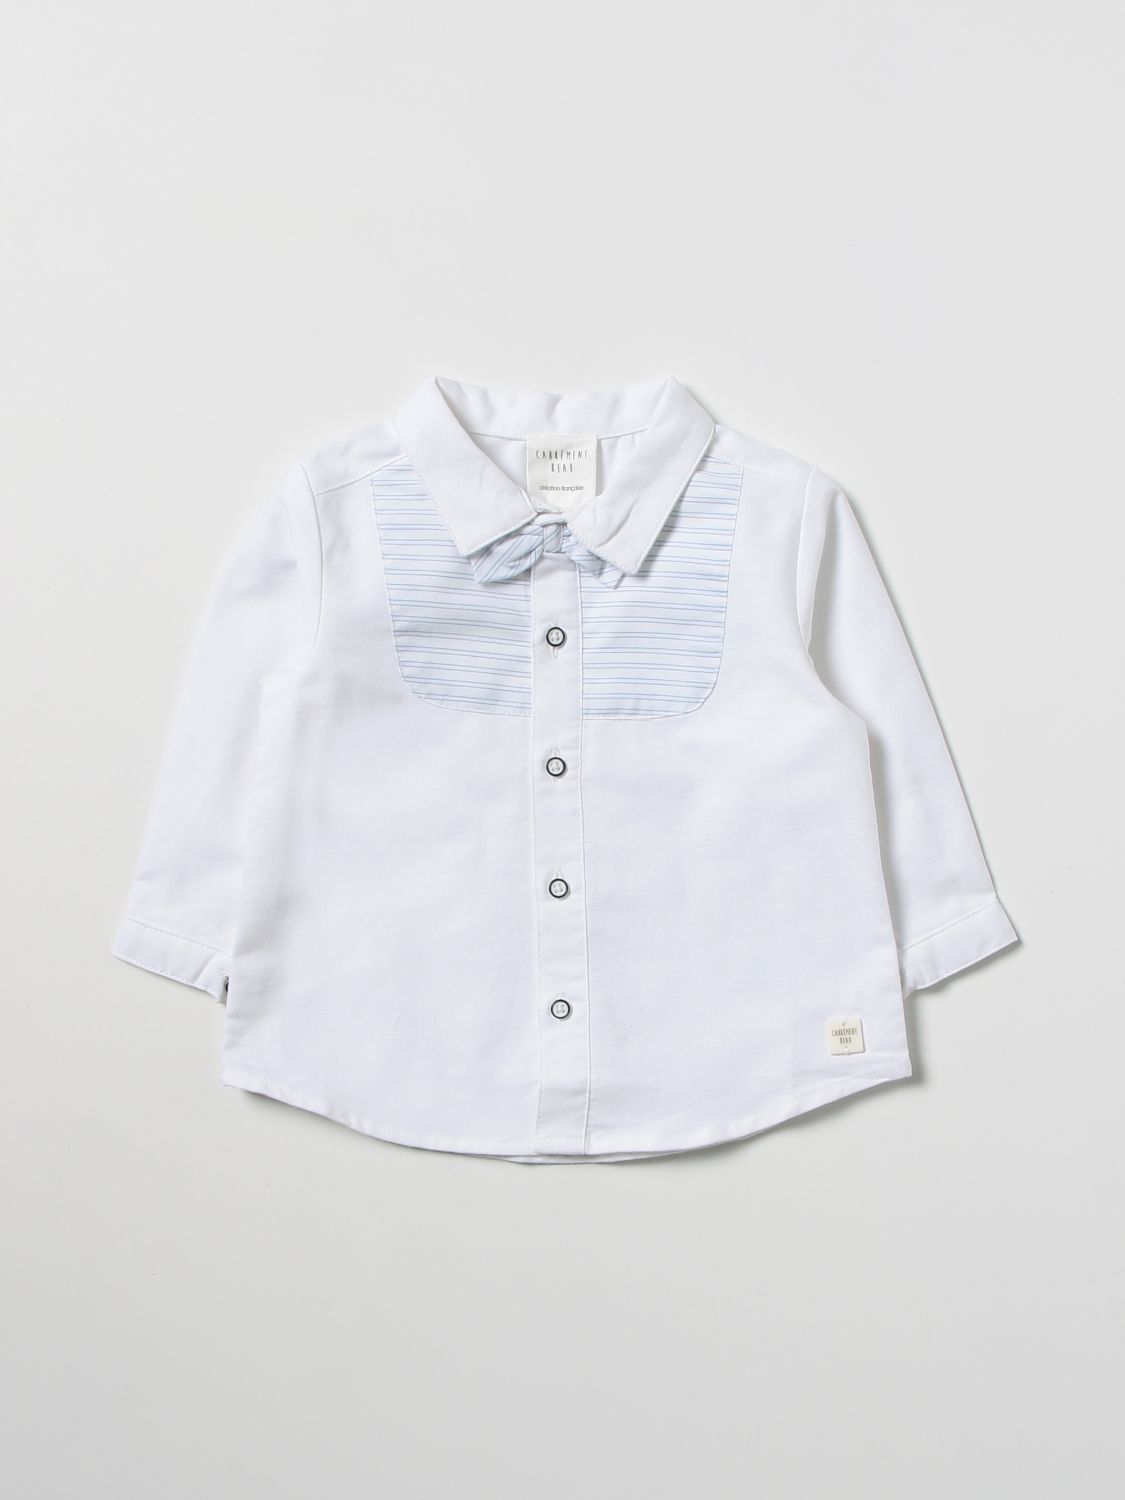 Carrèment Beau Babies' Shirt Carrément Beau Kids Colour White